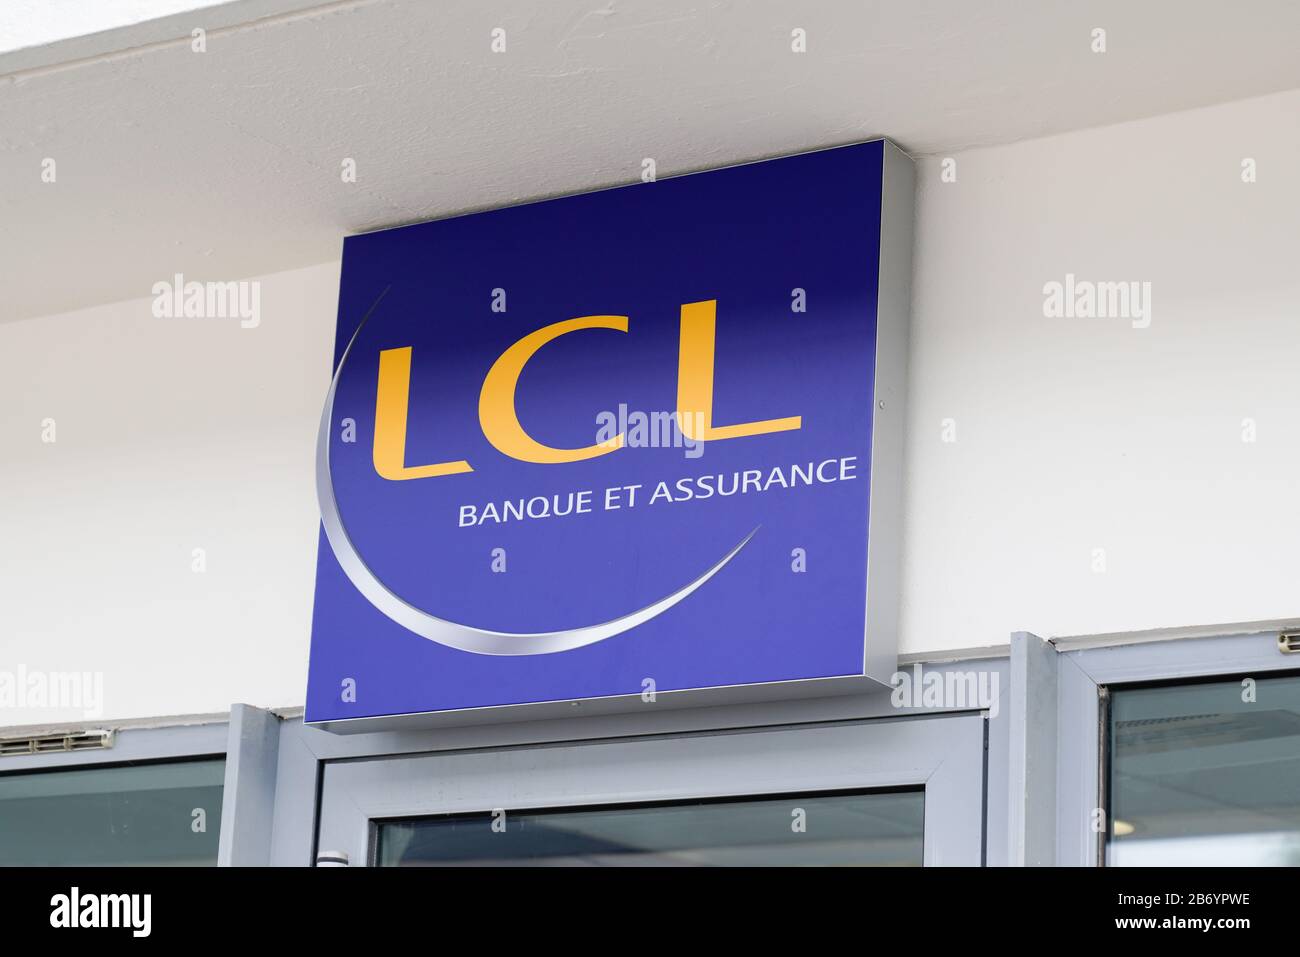 Bordeaux , Aquitaine / France - 10 28 2019 : lcl logo sign le credit Lyonnais Banque et assurance french bank signage Stock Photo